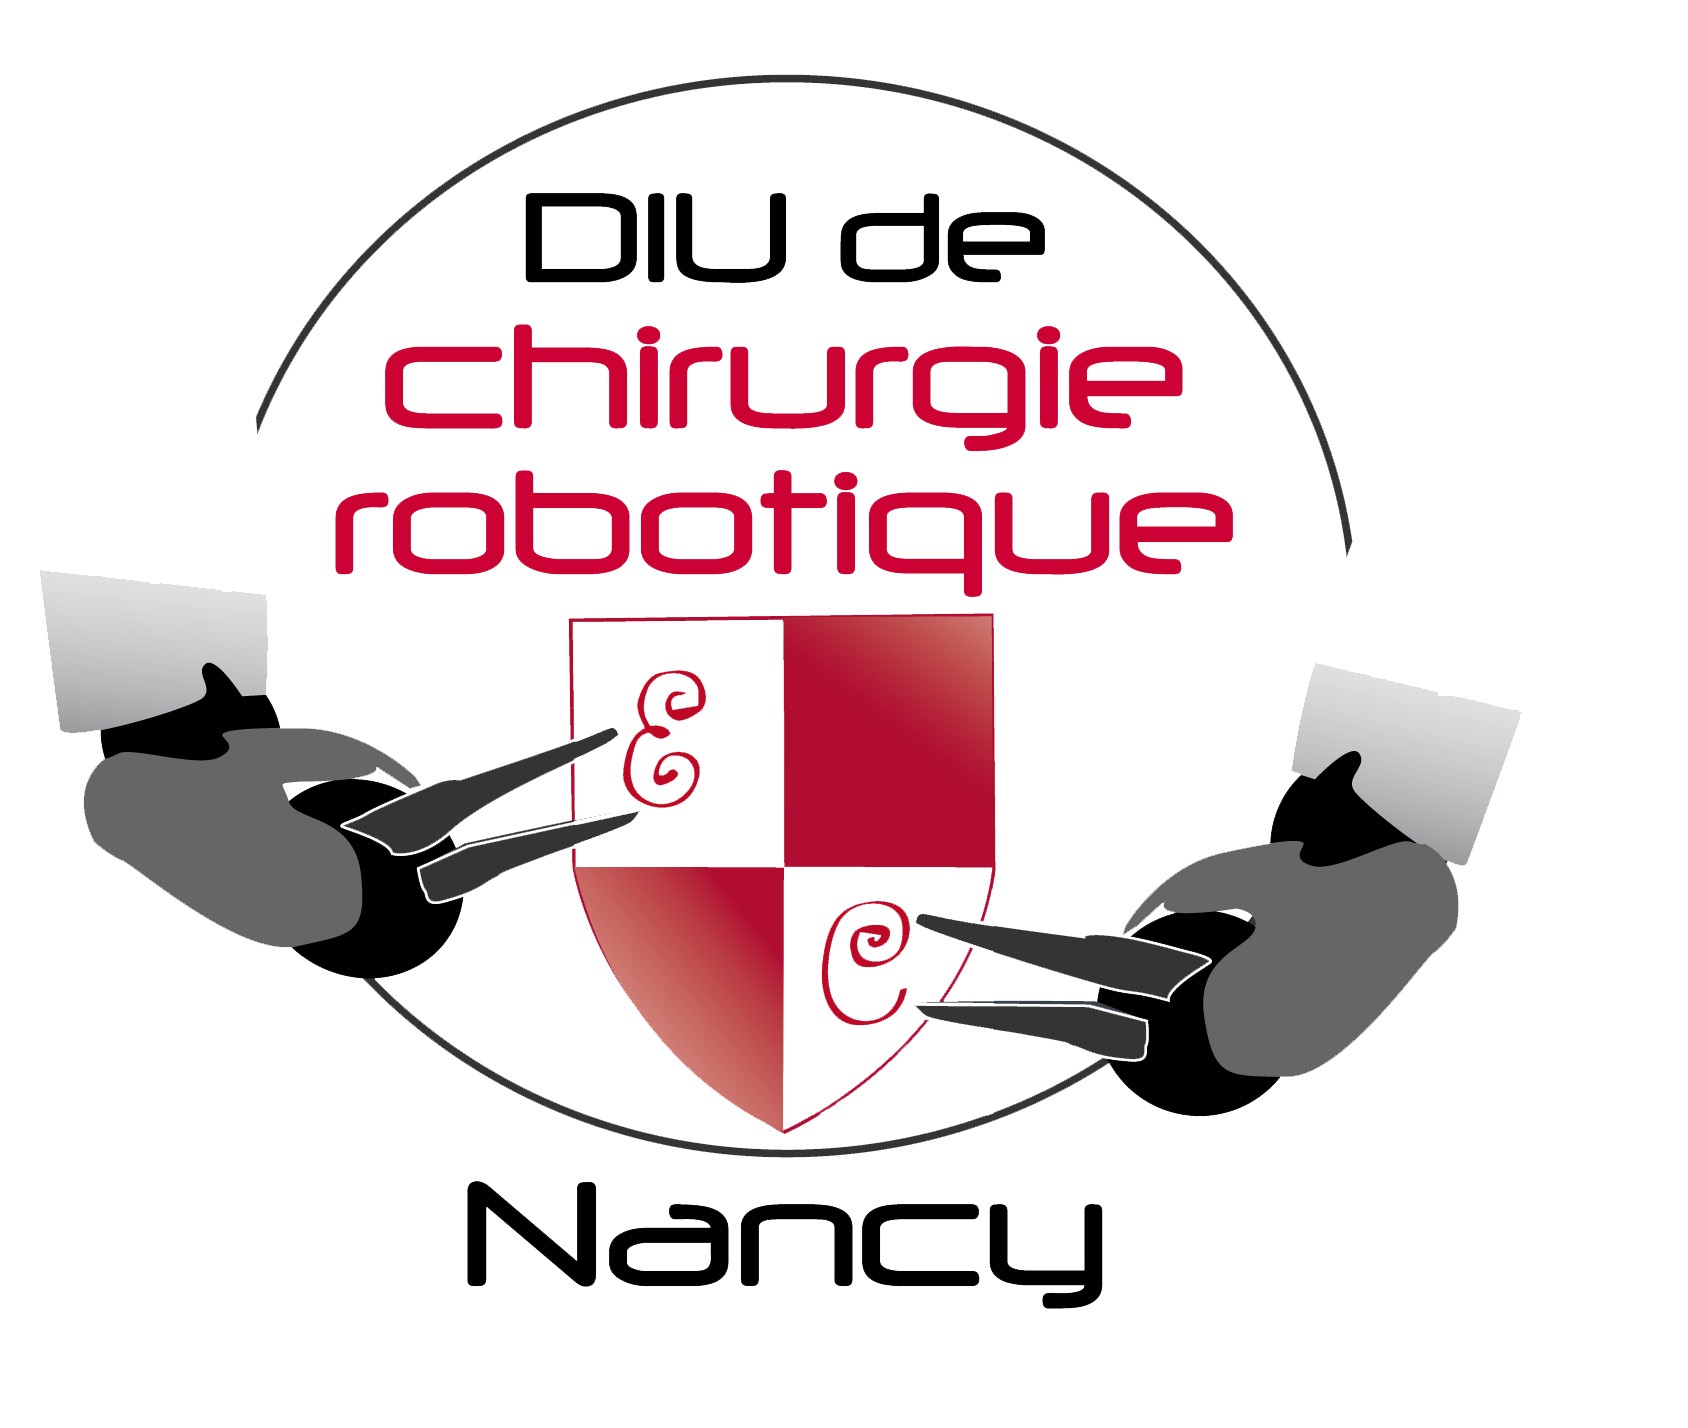 DIU de chirurgie robotique Nancy 2014 : Présent et avenir en chirurgie gynécologique robot assistée